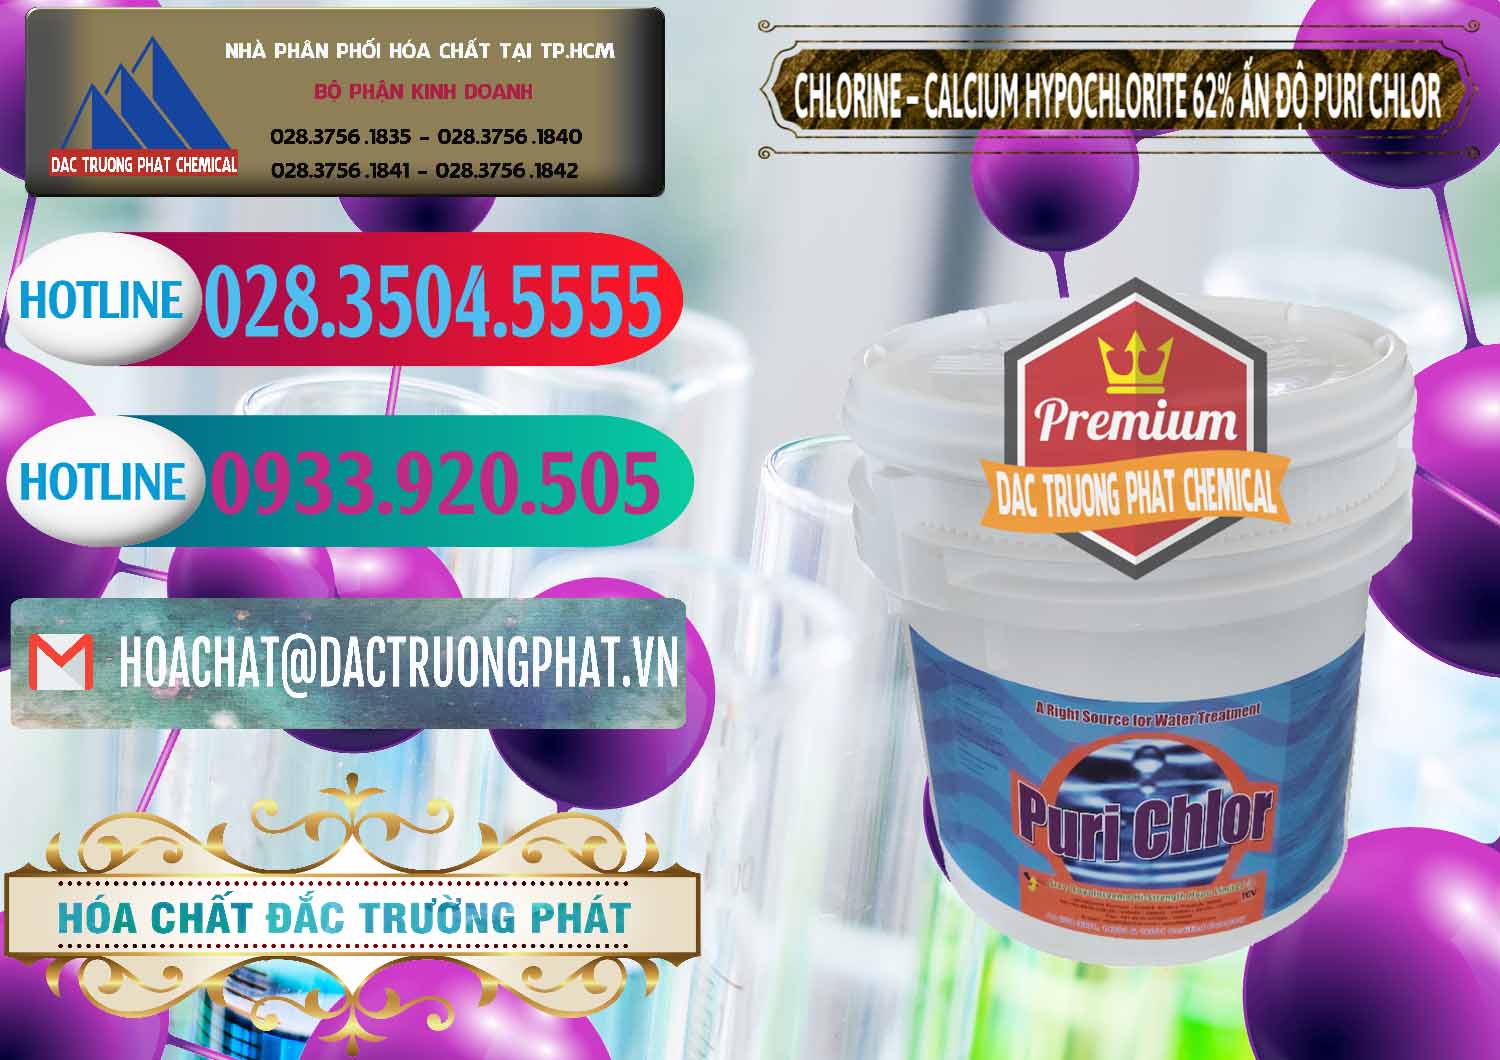 Công ty chuyên cung ứng & bán Chlorine – Clorin 62% Puri Chlo Ấn Độ India - 0052 - Cty phân phối ( nhập khẩu ) hóa chất tại TP.HCM - truongphat.vn